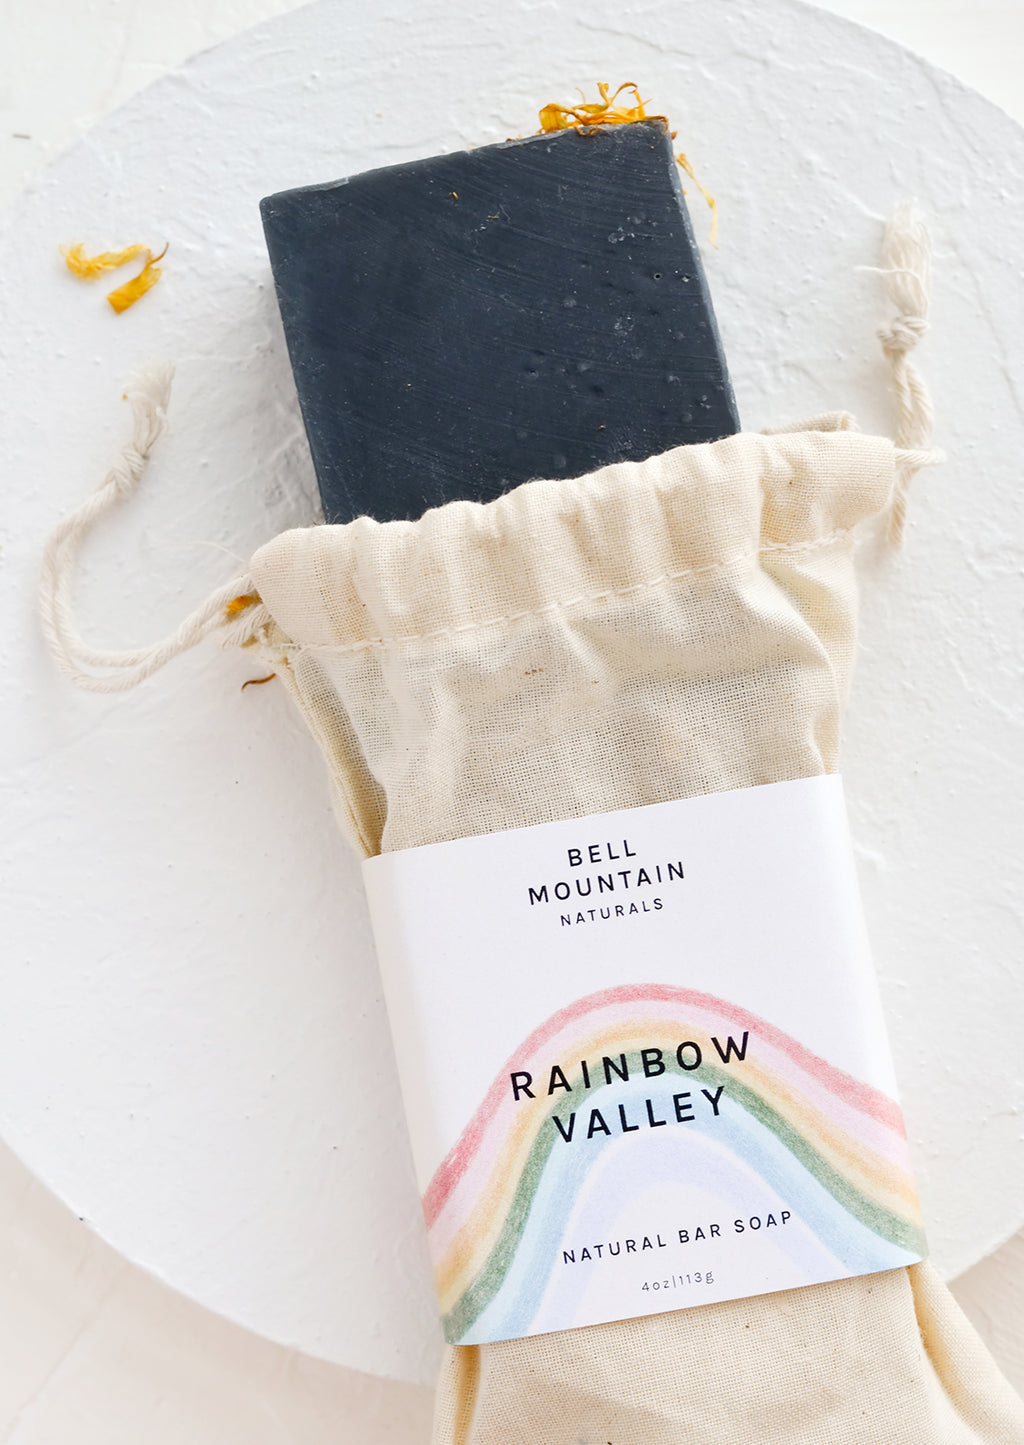 Rainbow Valley: A bar soap named "Rainbow Valley".